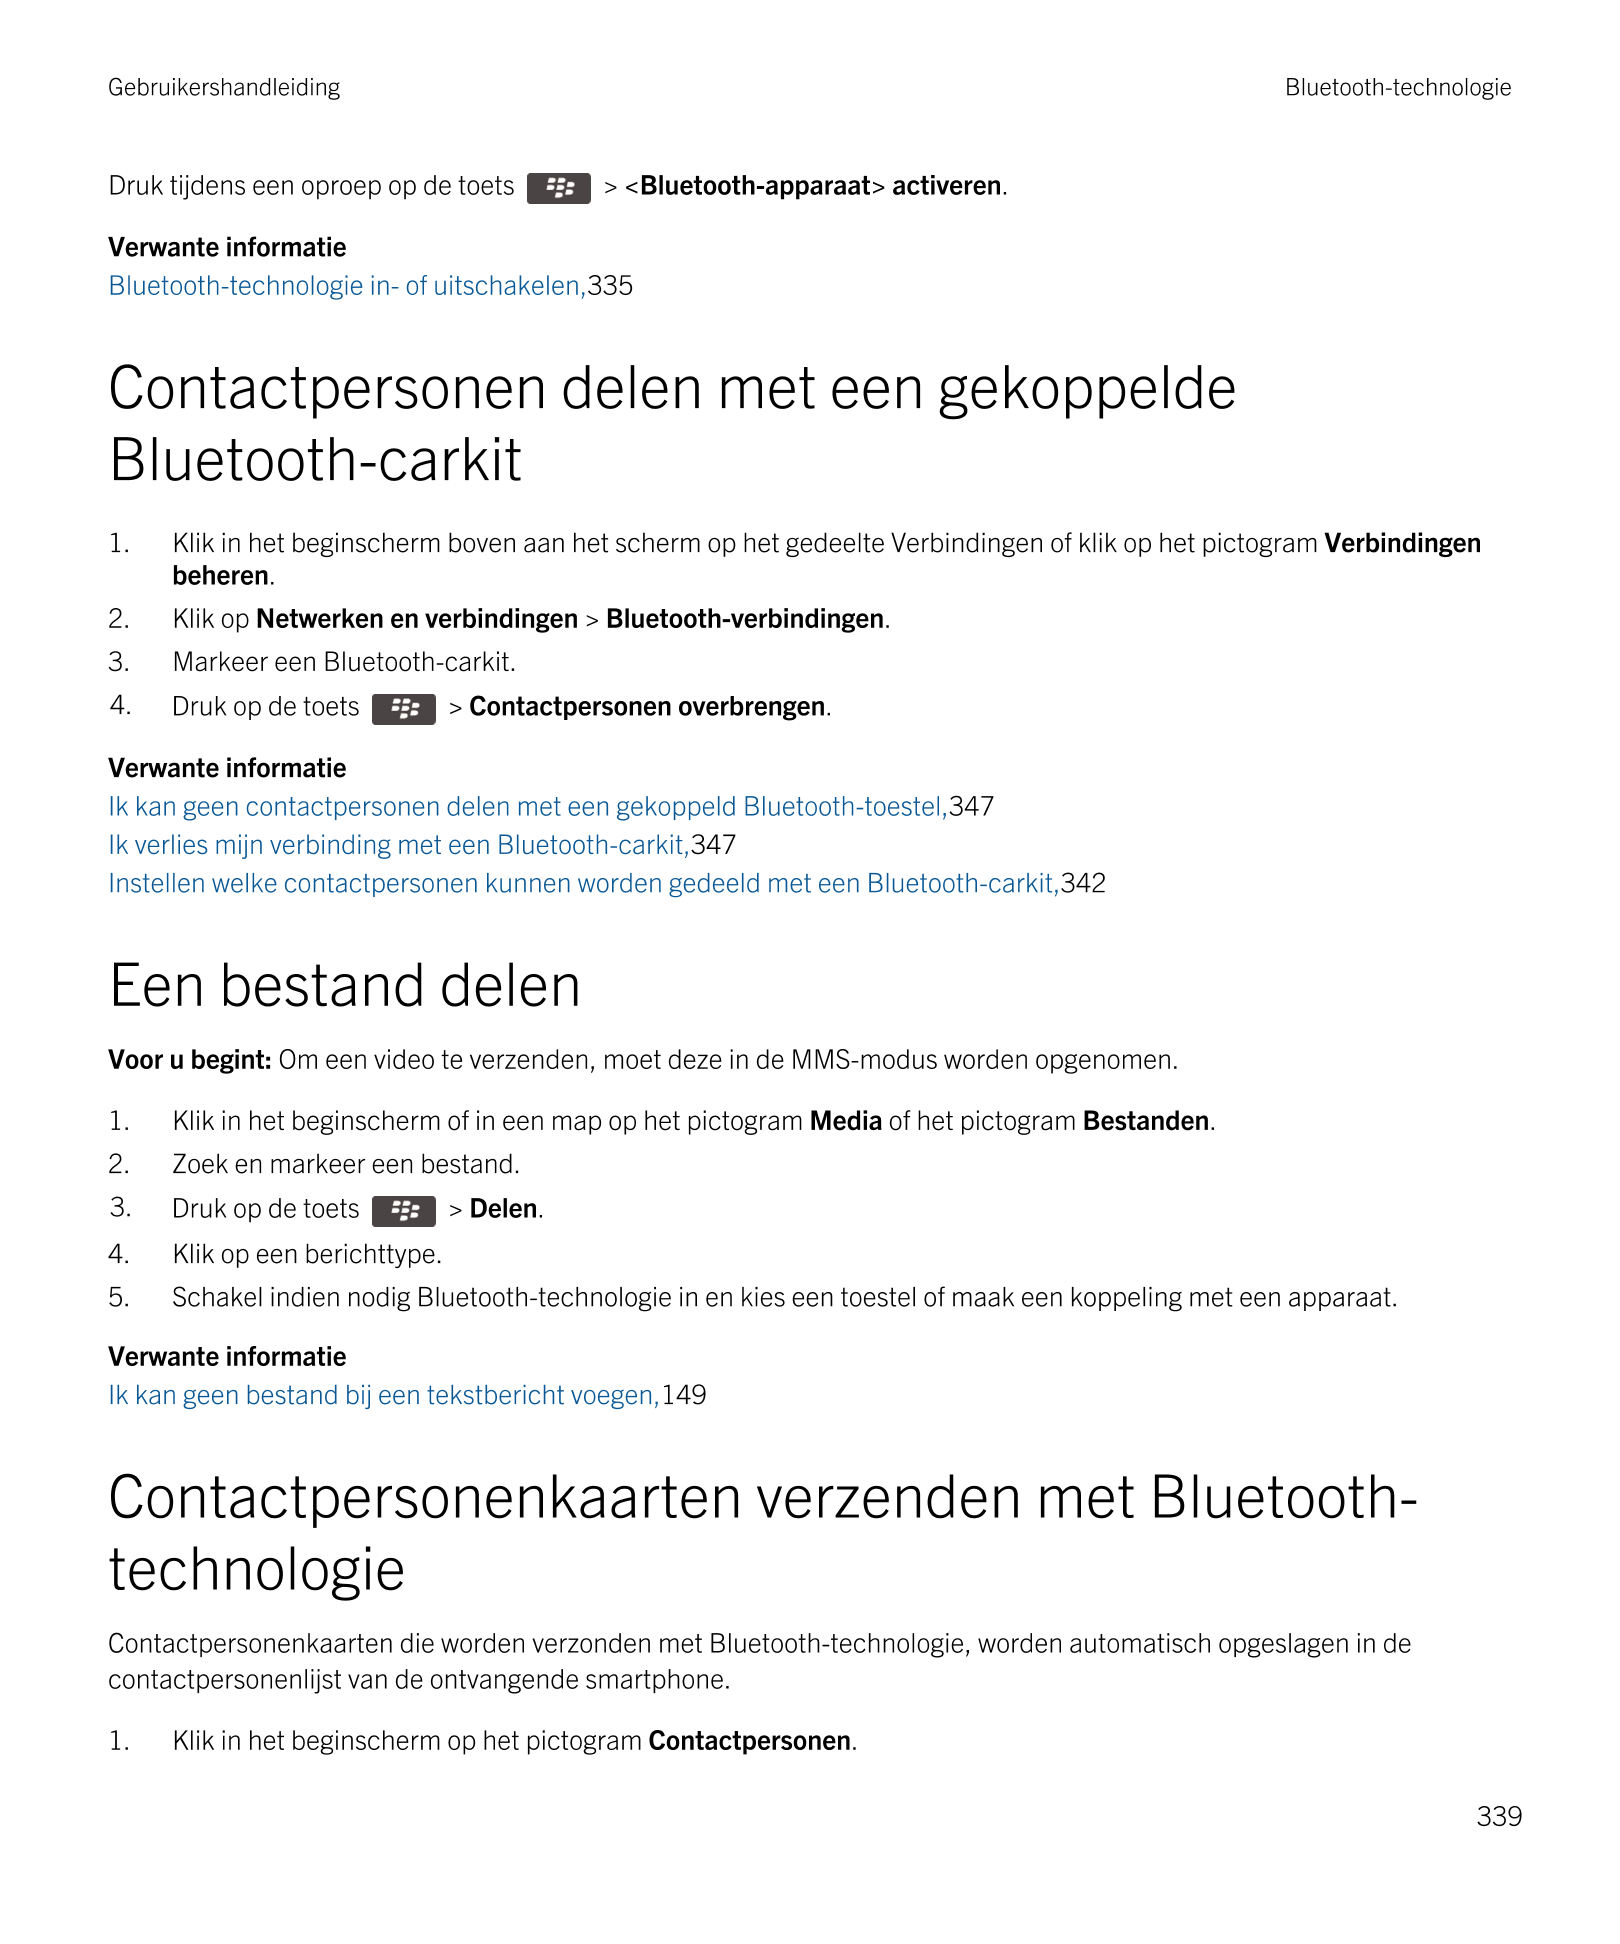 Gebruikershandleiding Bluetooth-technologie
Druk tijdens een oproep op de toets   >  <Bluetooth-apparaat> activeren.
Verwante in